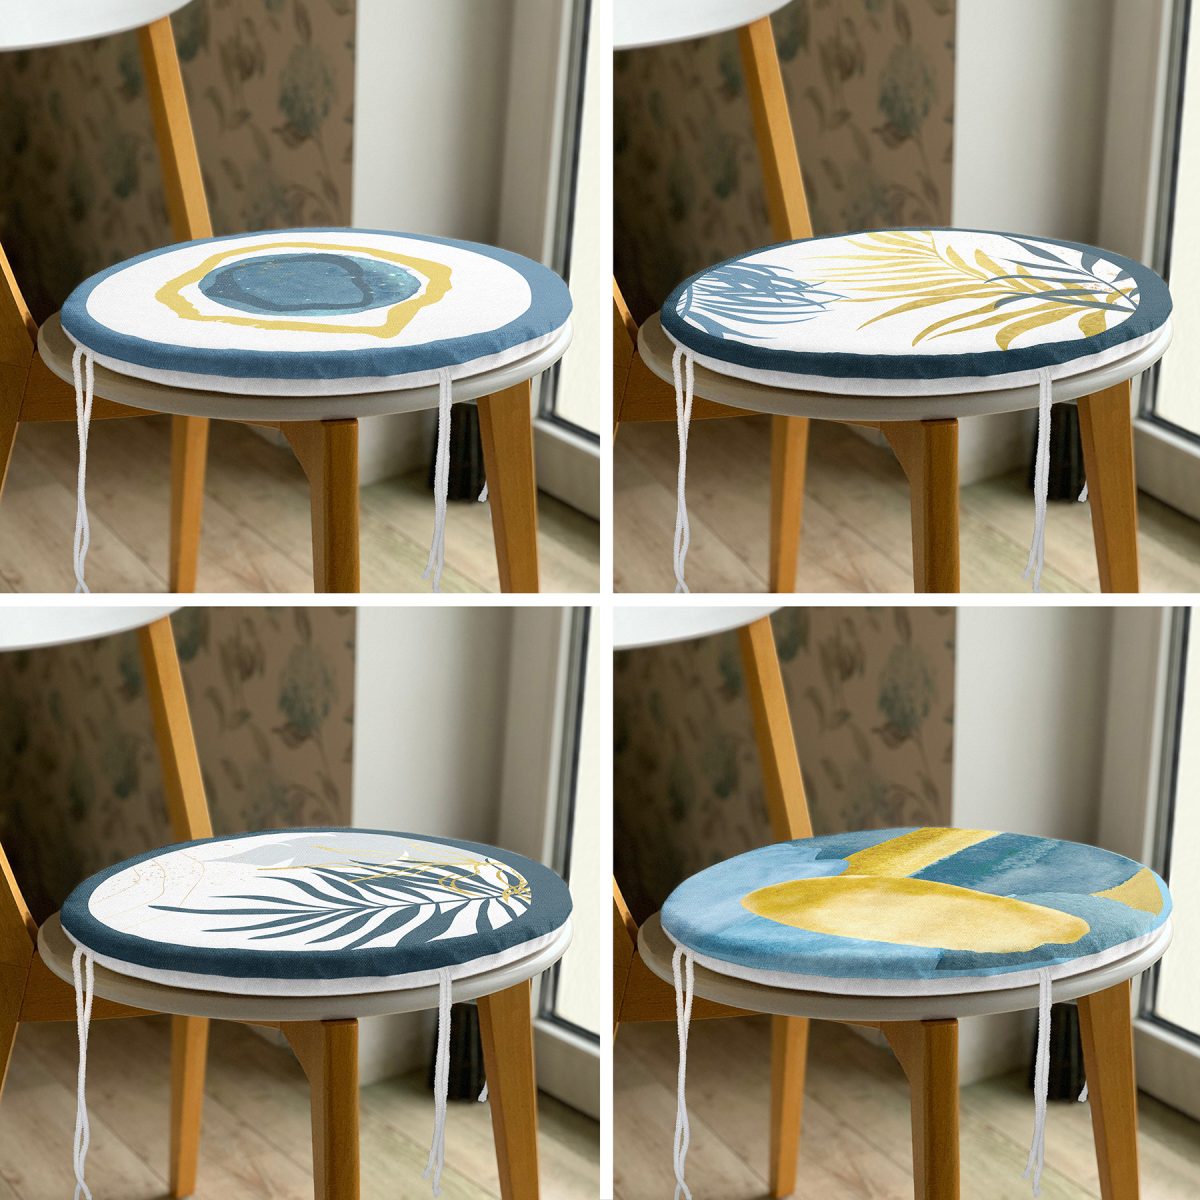 4'lü Renkli Zemin Üzerinde Gold Detaylı Yaprak Desenli Modern Yuvarlak Fermuarlı Sandalye Minderi Seti Realhomes